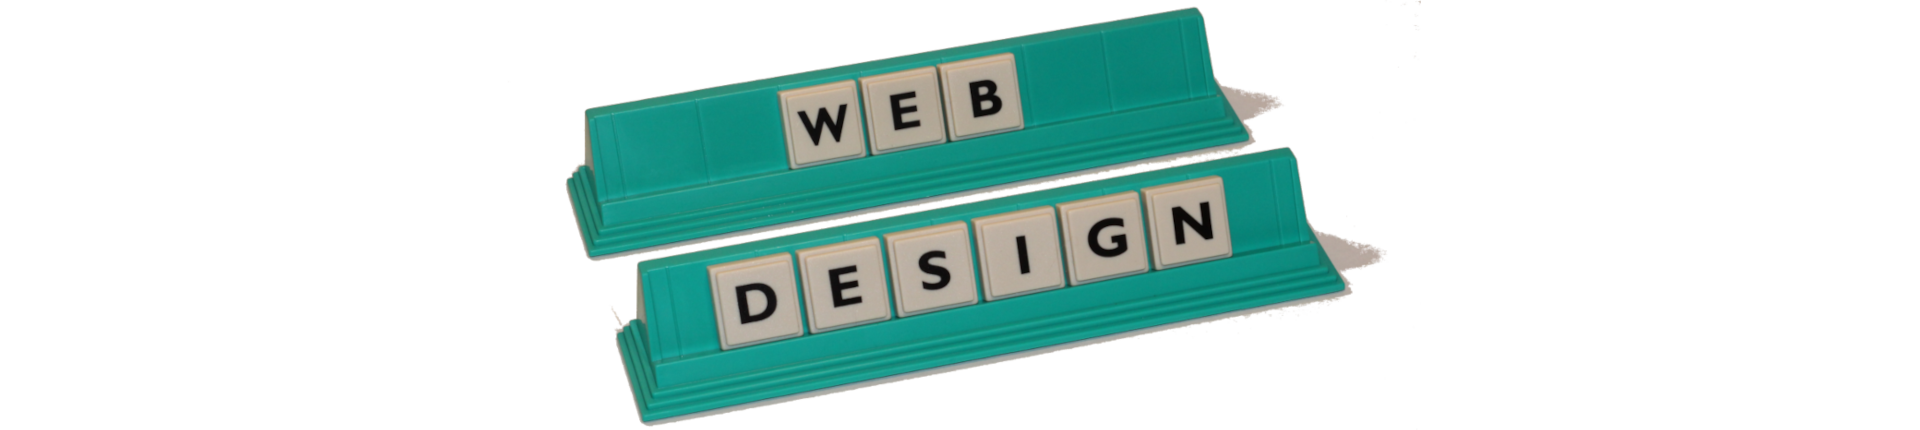 Webdesign - Was kostet eine Webseitenerstelllung. Bild Zeit Schriftzug "Webdesign"